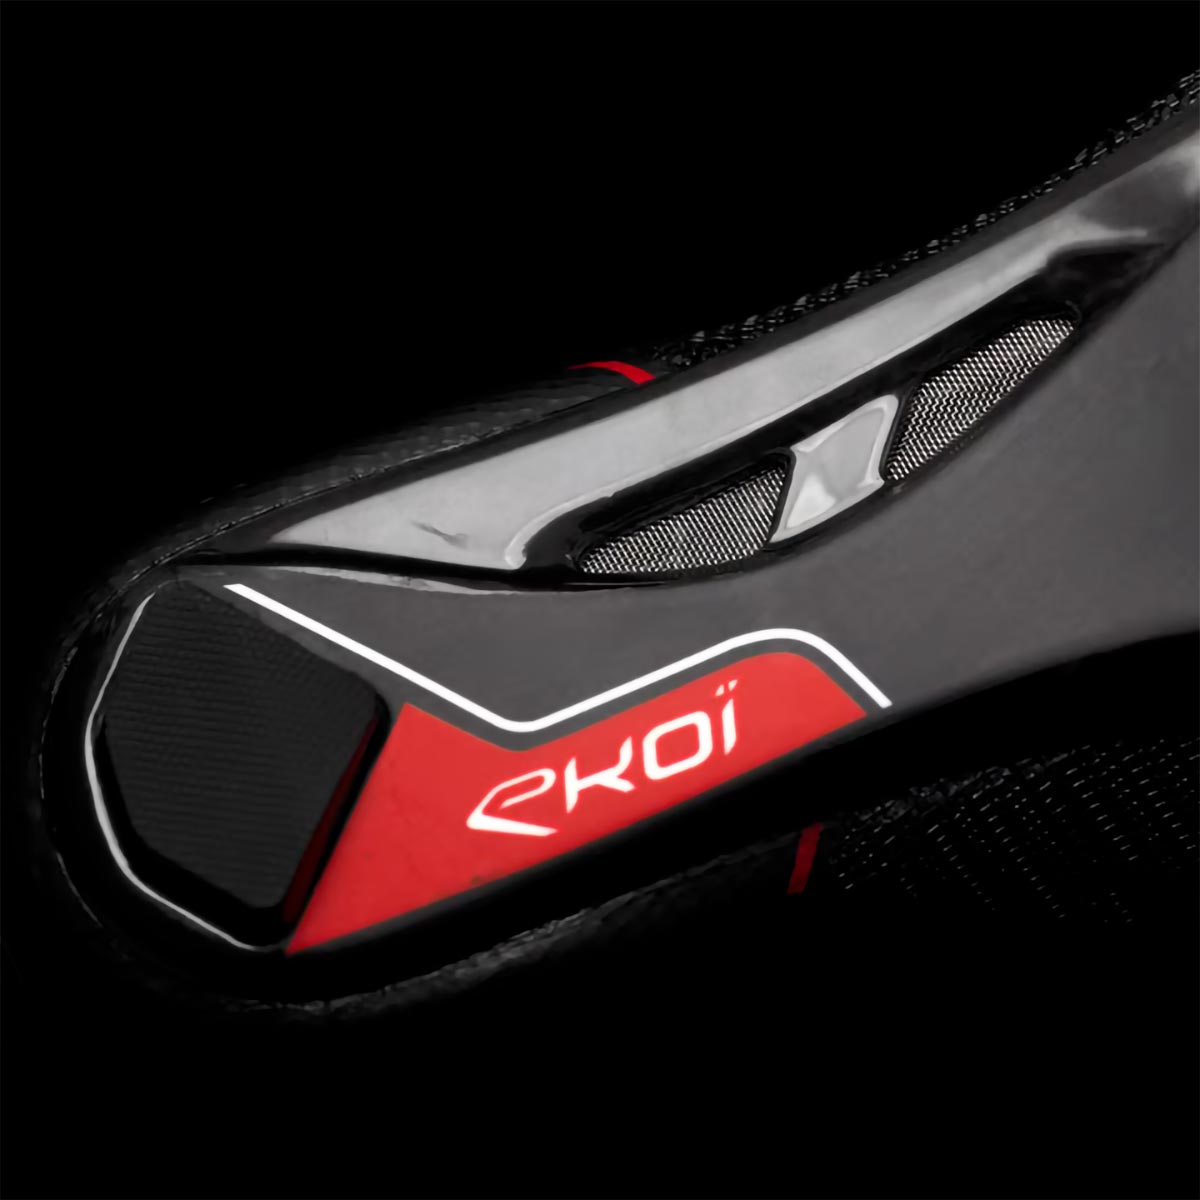 Ekoï C-4 Full Real Carbon, lo más avanzado de la marca francesa en zapatillas de carretera